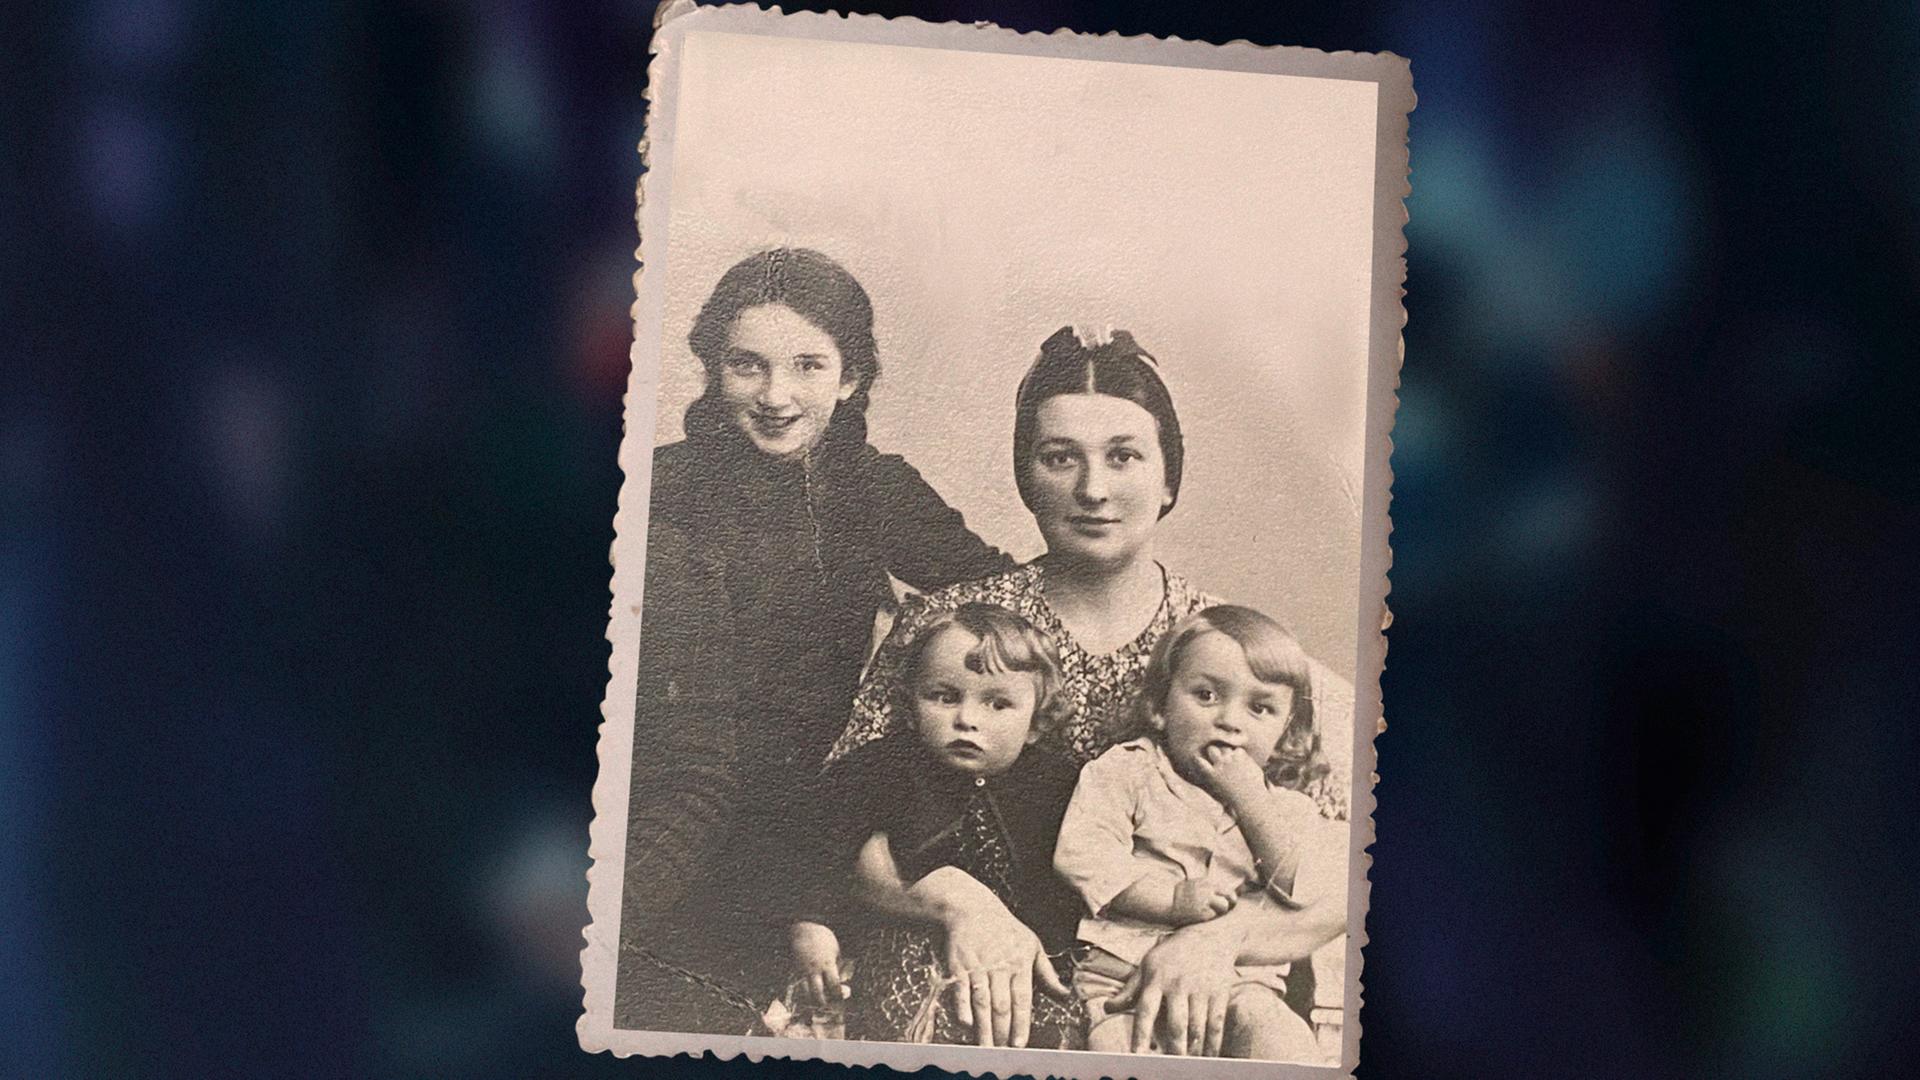 Das Bild zeigt eine alte, schwarzweiße Familienfotografie aus den frühen 1940er . Sie zeigt die dreijährigen Zwillinge Ida und Adam Paluch im Arm ihrer Mutter. Links im Bild ist ihre ältere Schwester Genia zu sehen. 